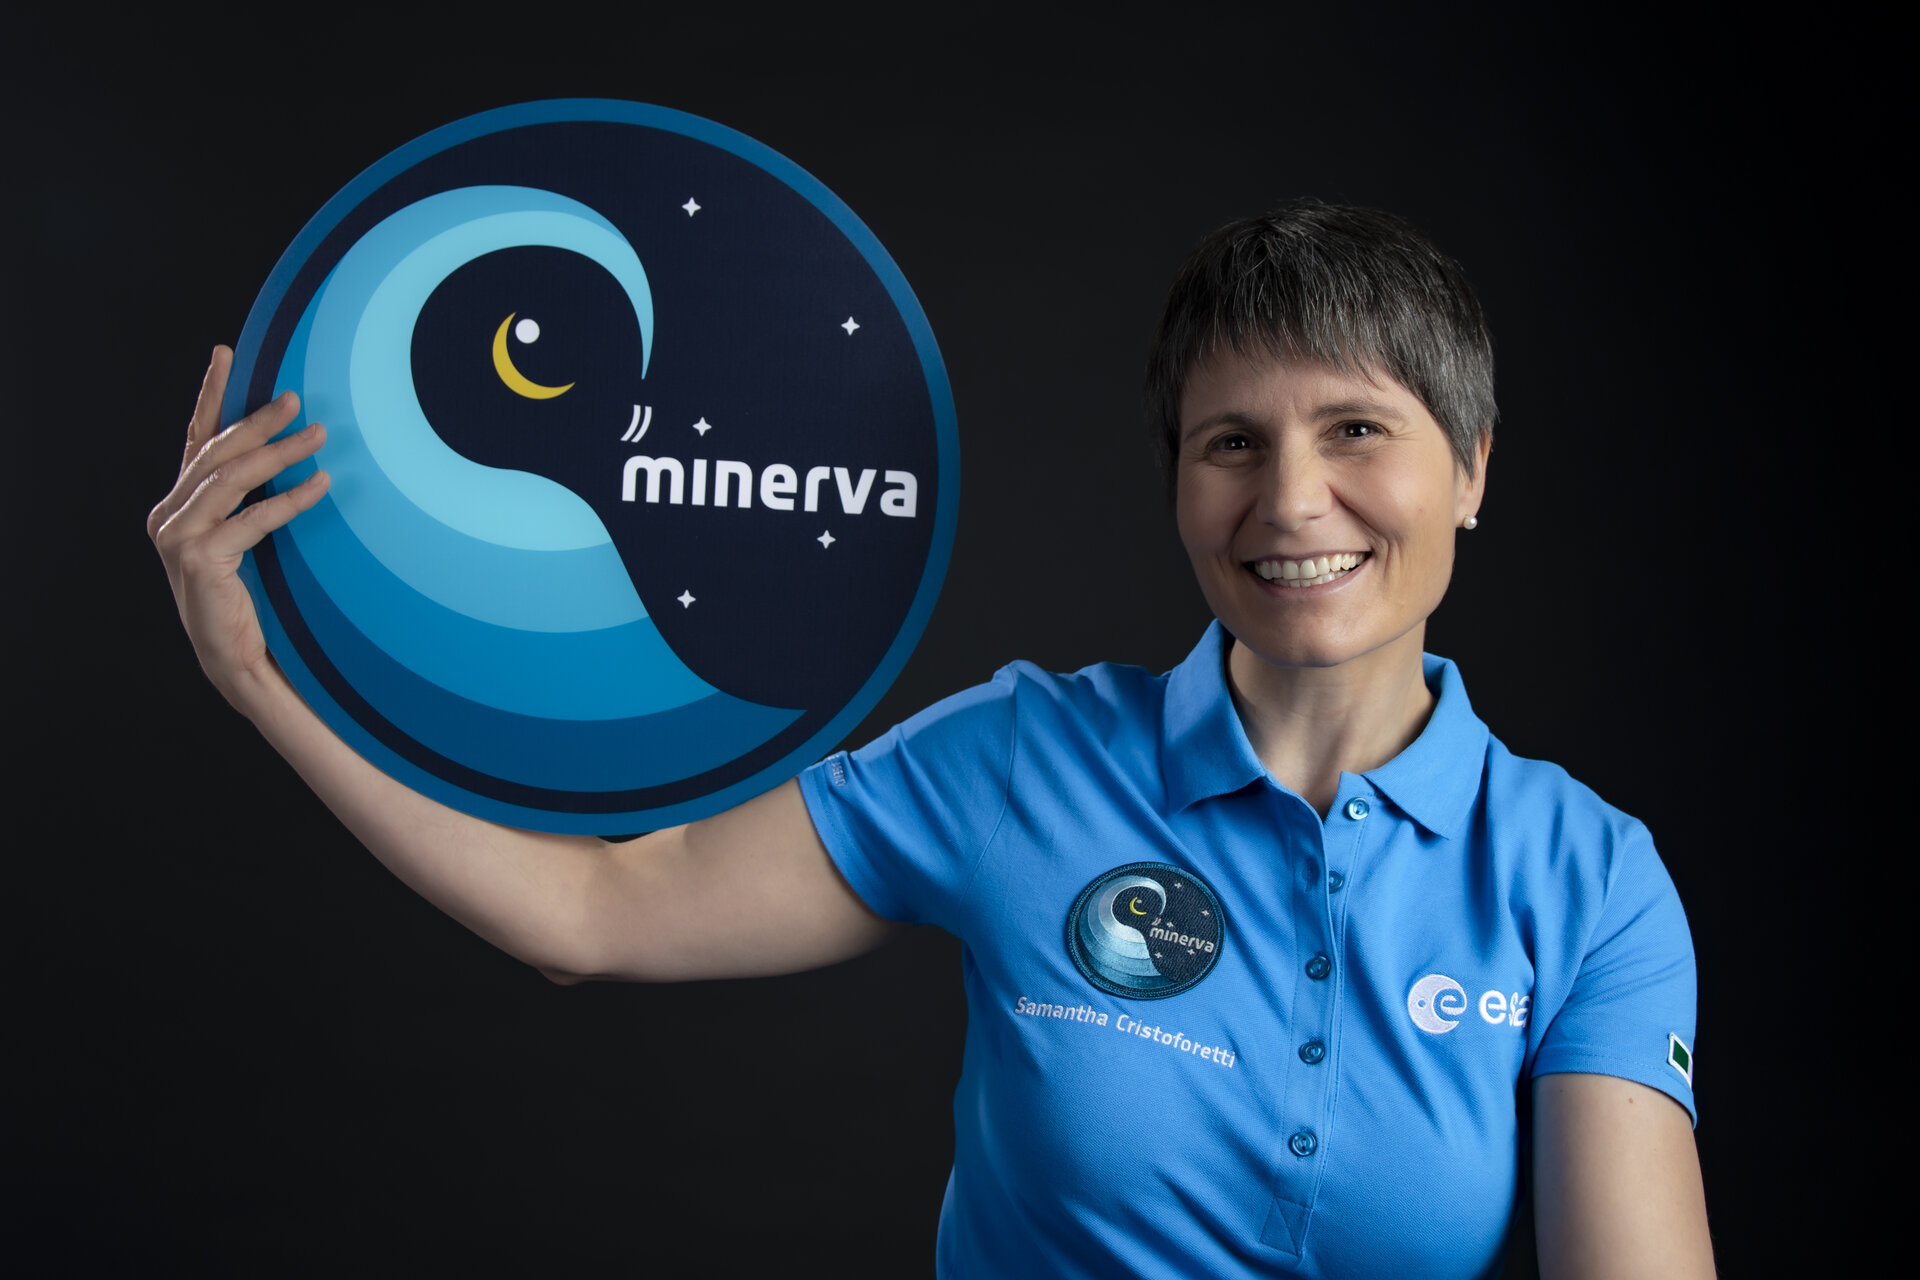 Samantha Cristoforetti, si avvicina il lancio della missione Minerva